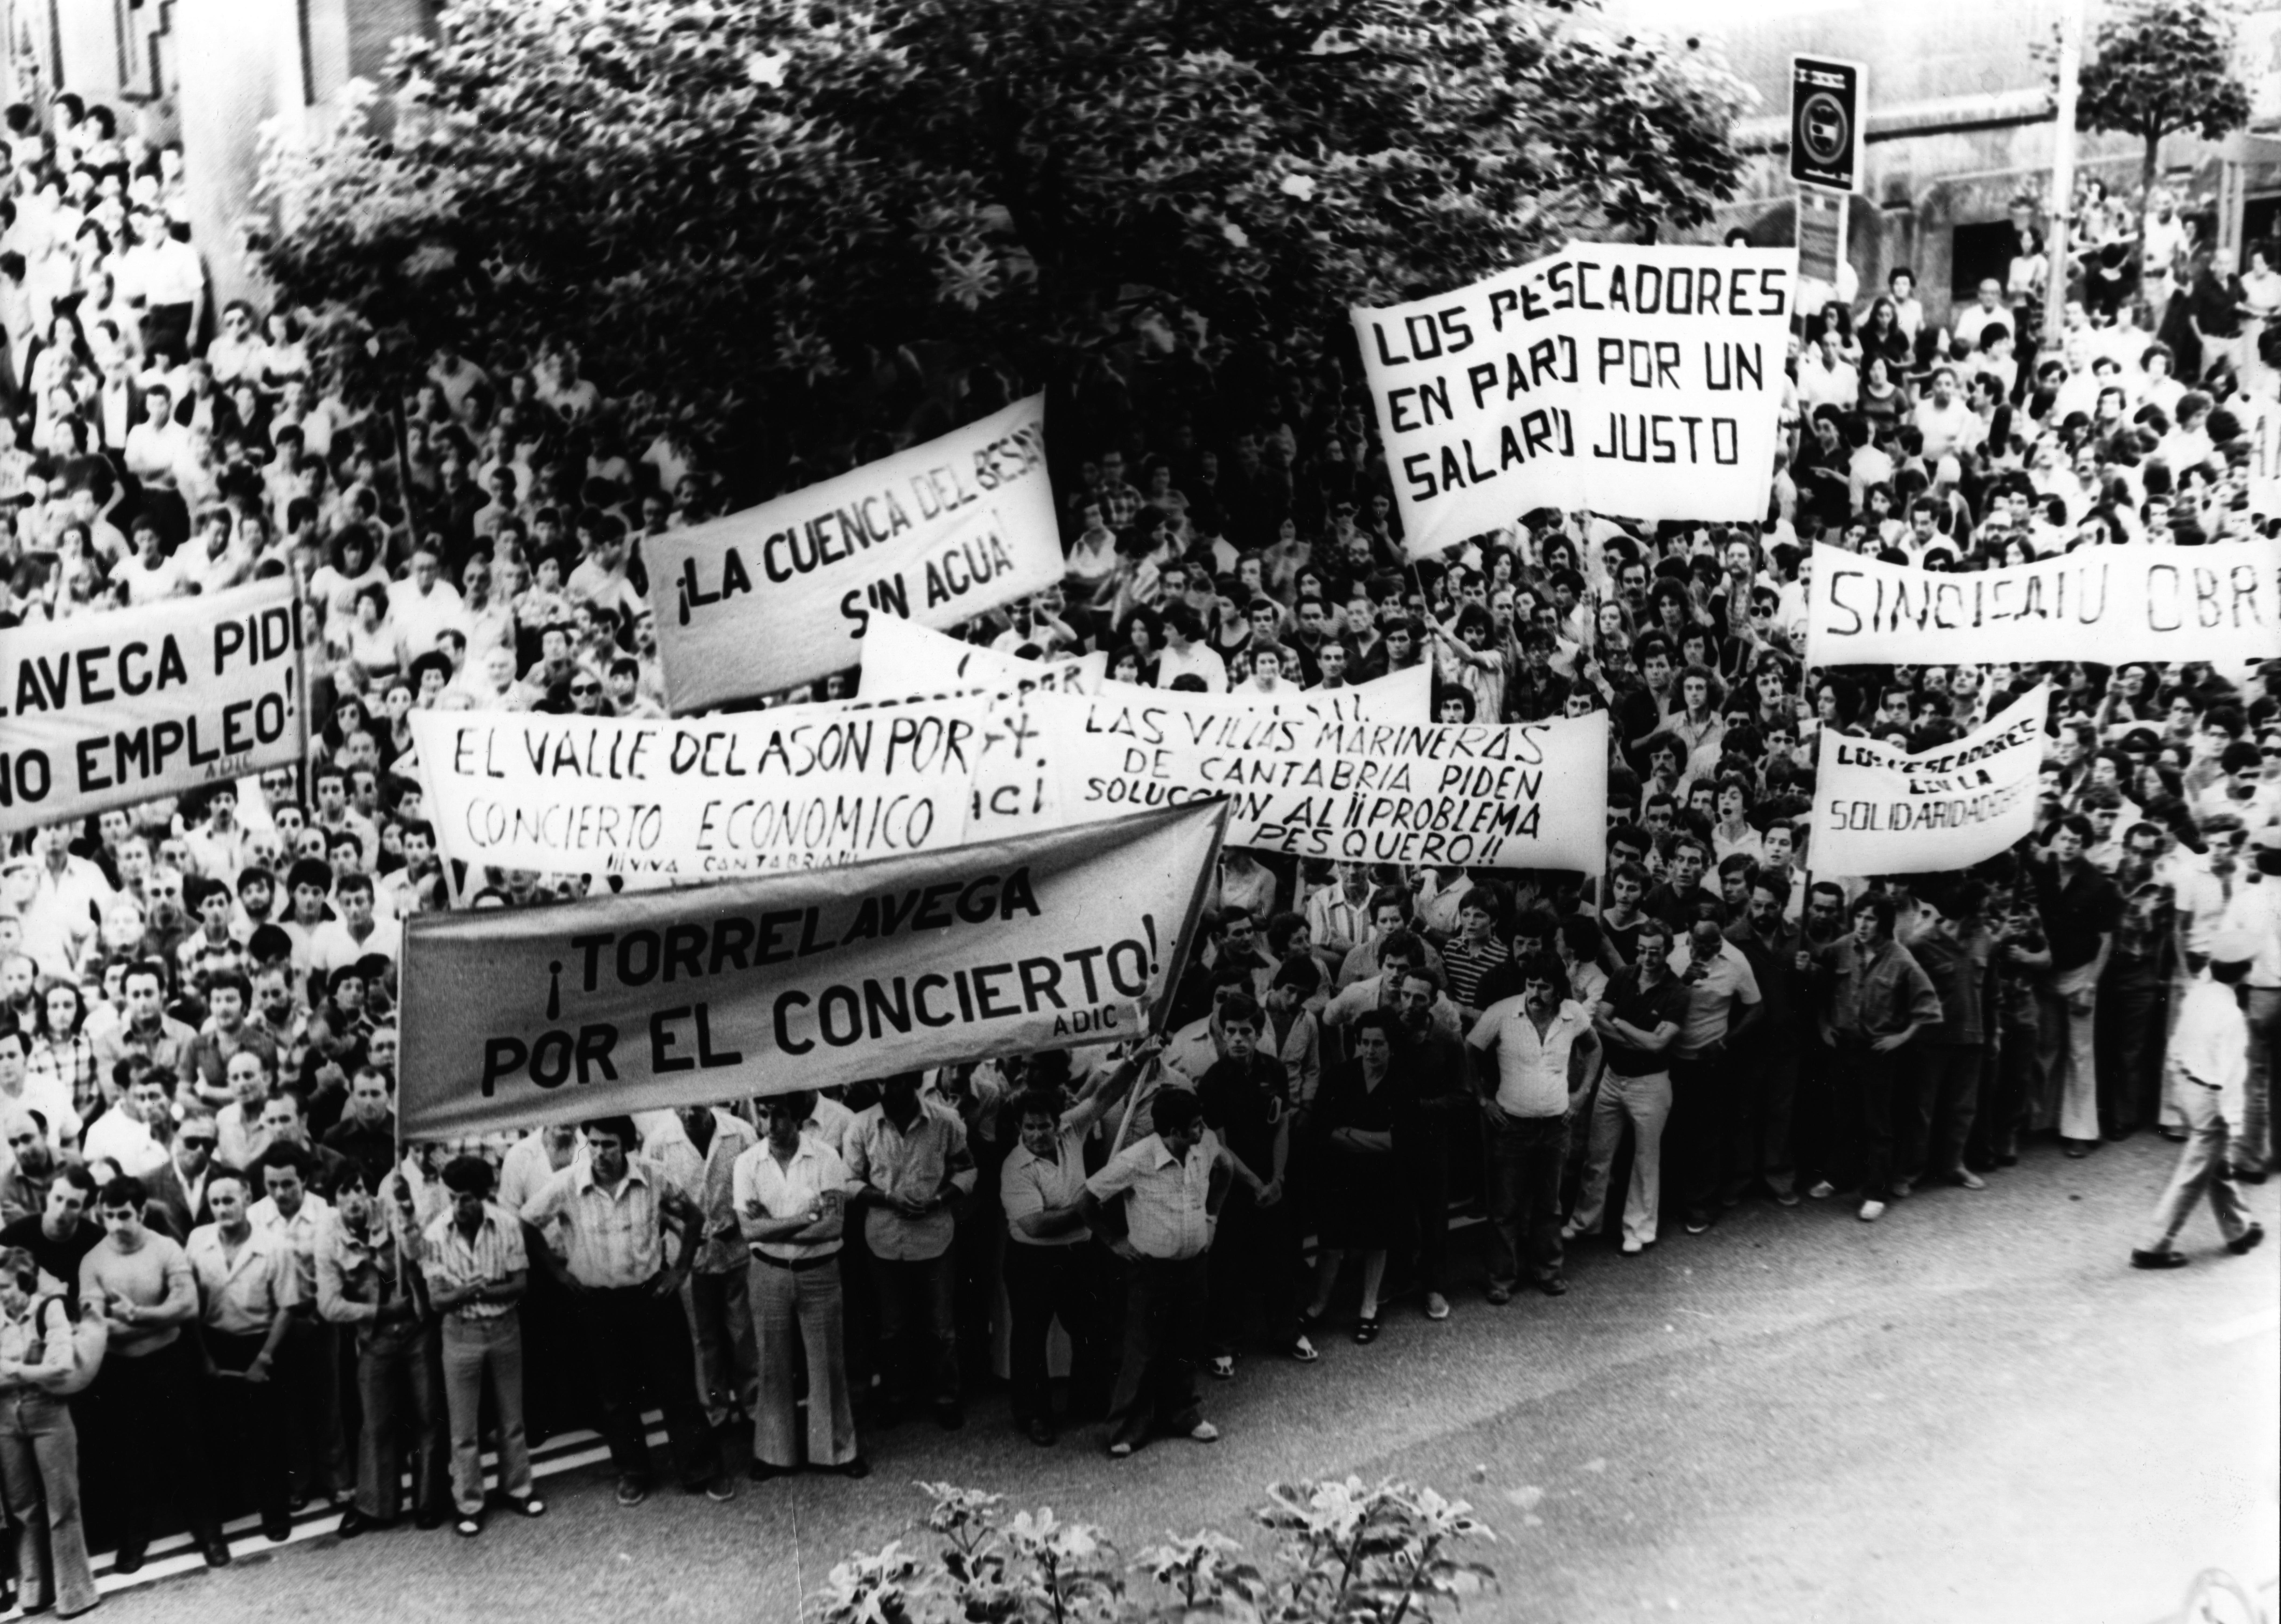 Manifestación celebrada el 10 de julio de 1976 por ADIC con el lema "por el concierto económico y contra el abandono de la región". Ana Valle/Desmemoriados